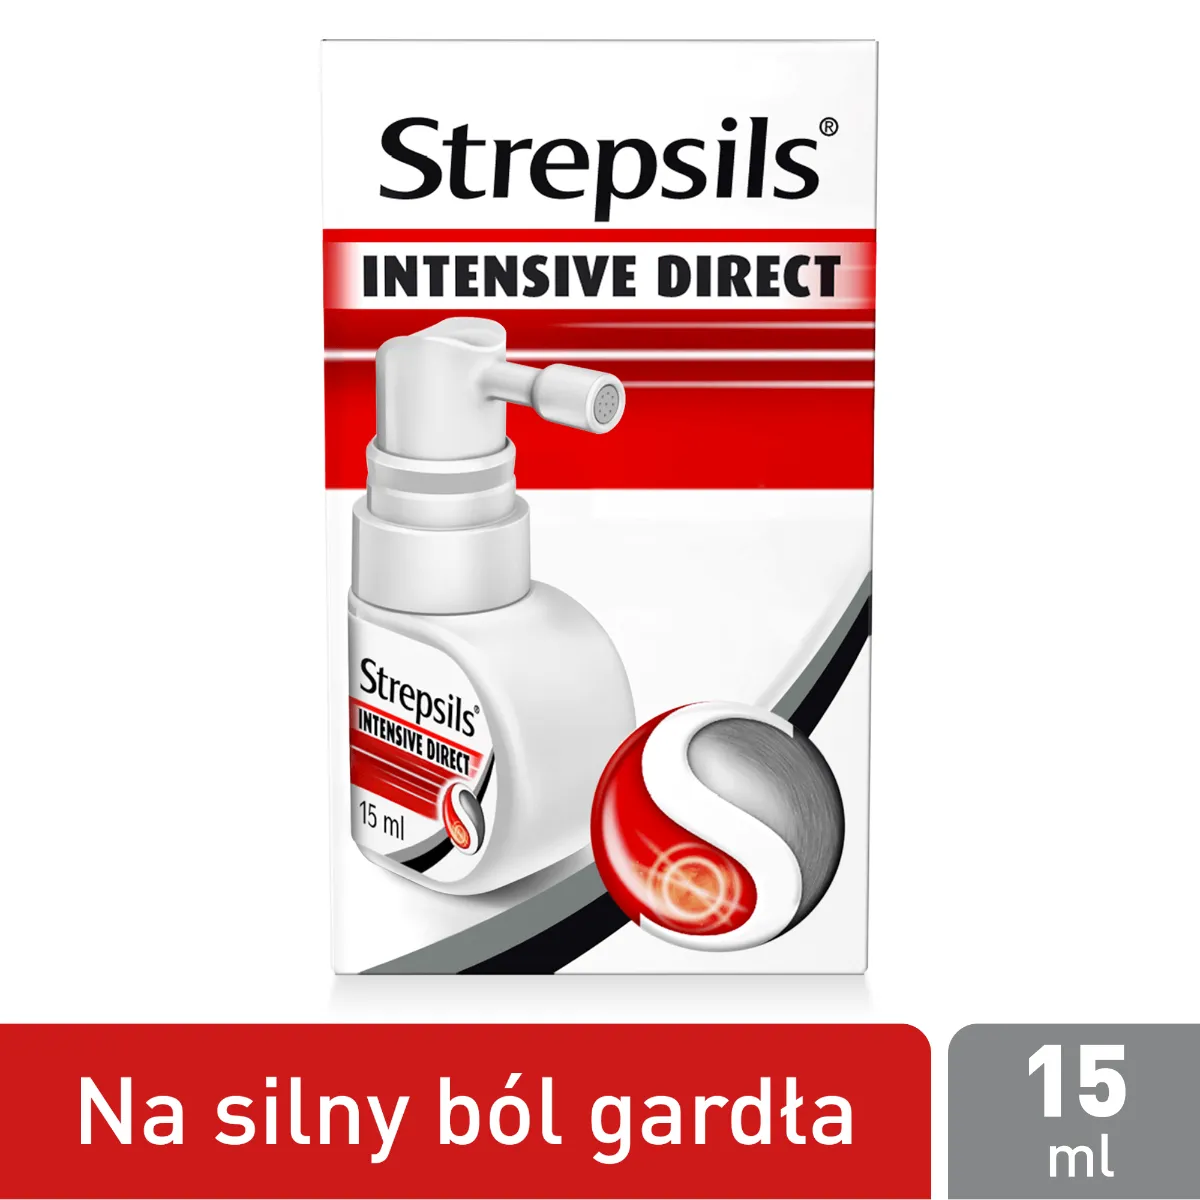 Strepsils Intensive Direct - Lek w postaci aerozolu o działaniu przeciwbólowym i przeciwzapalnym, 15 ml